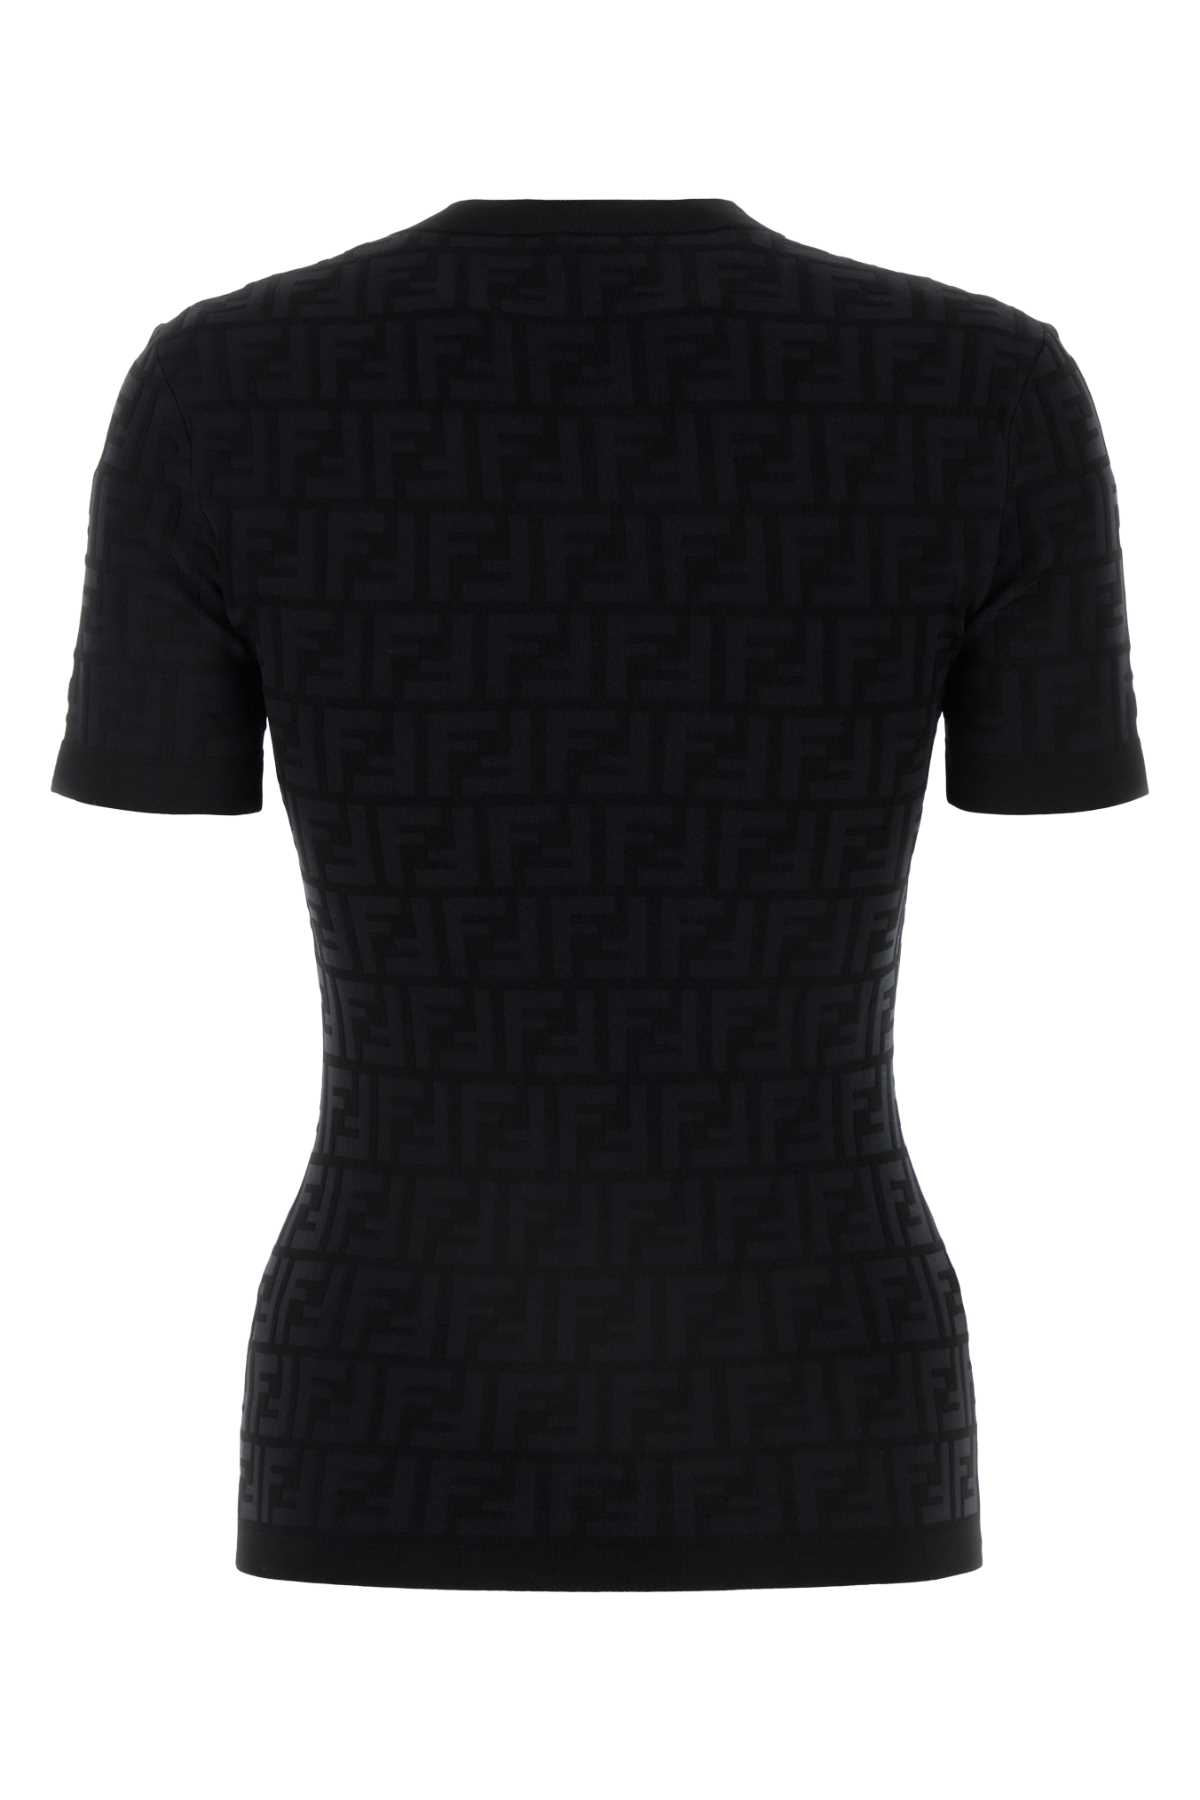 Fendi Black Stretch Viscose Blend T-shirt